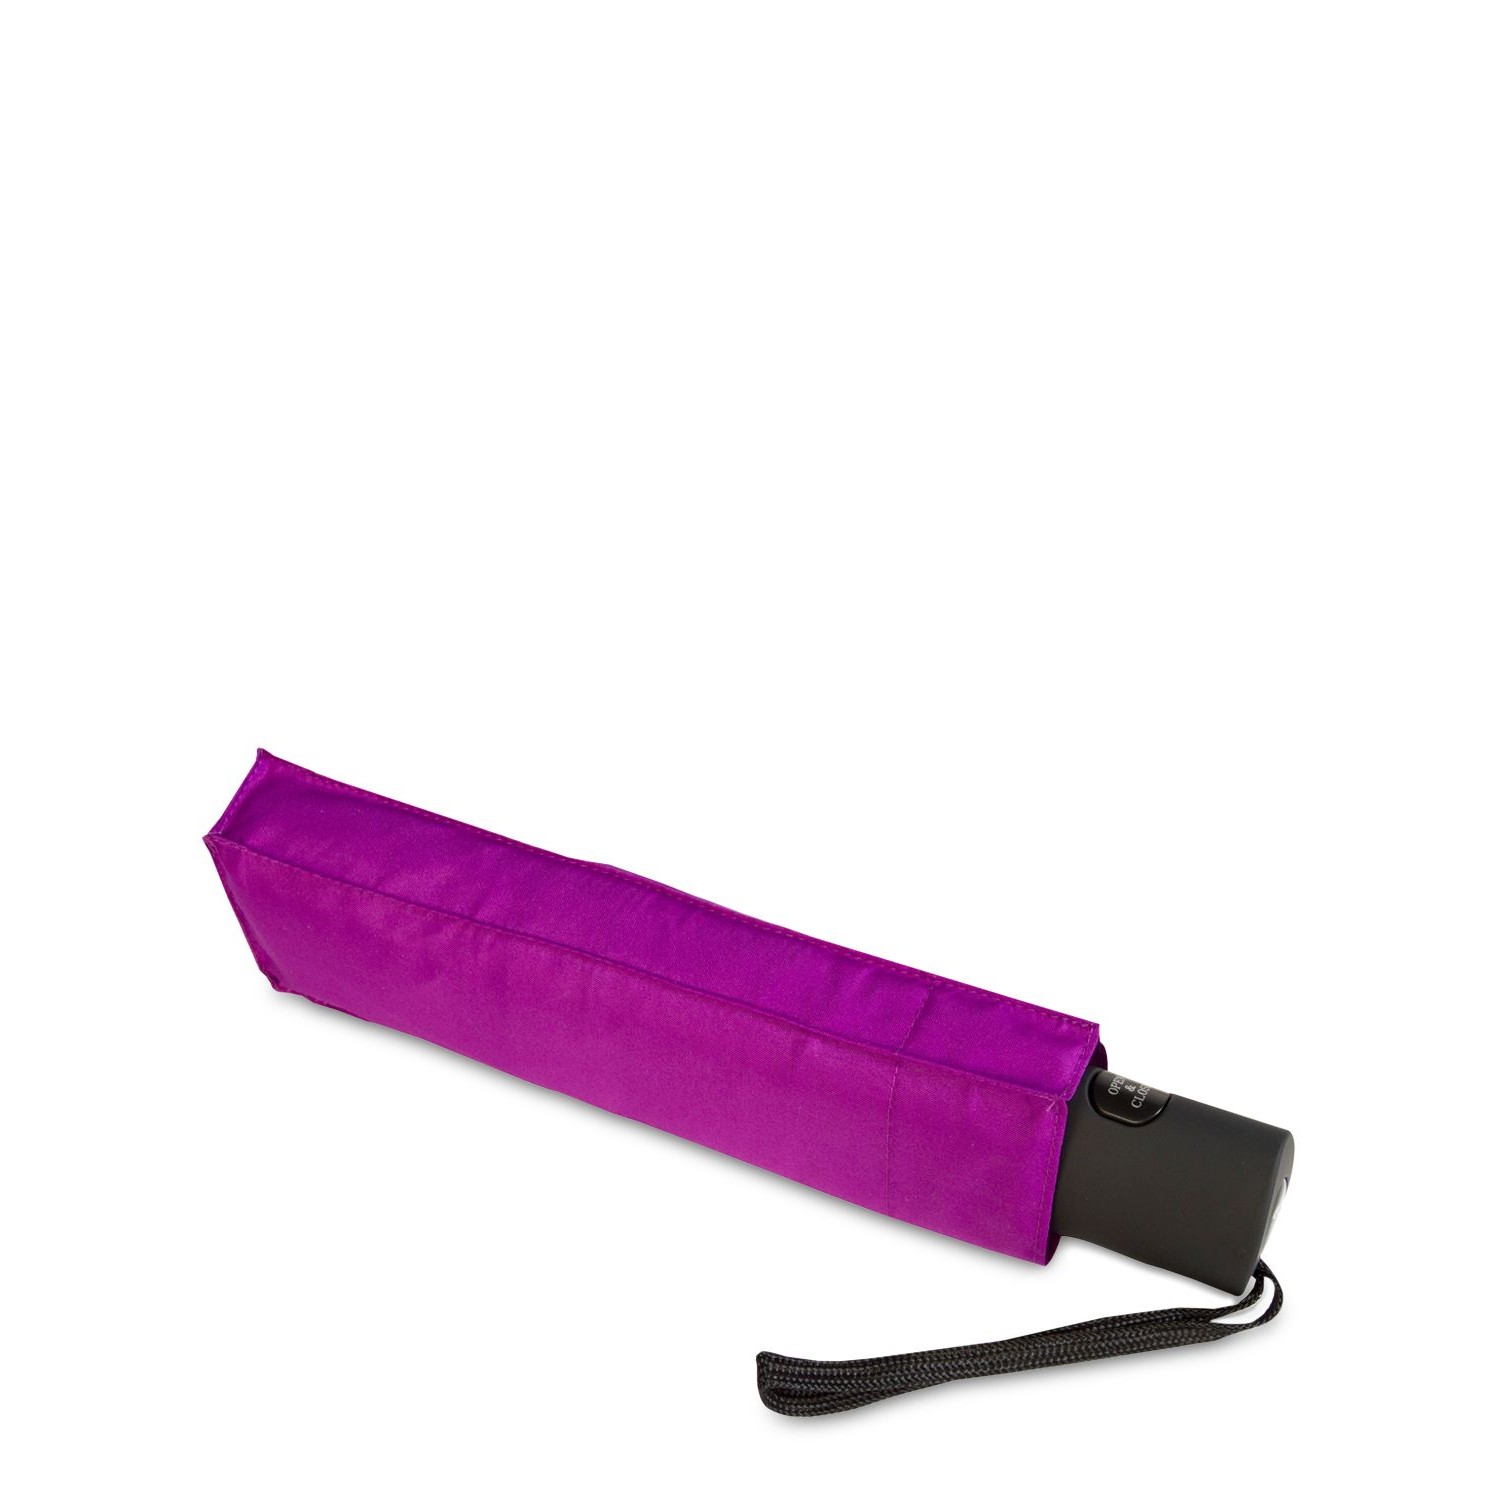 Shedrain WindPro Vented Automatic Compact Umbrella, Purple